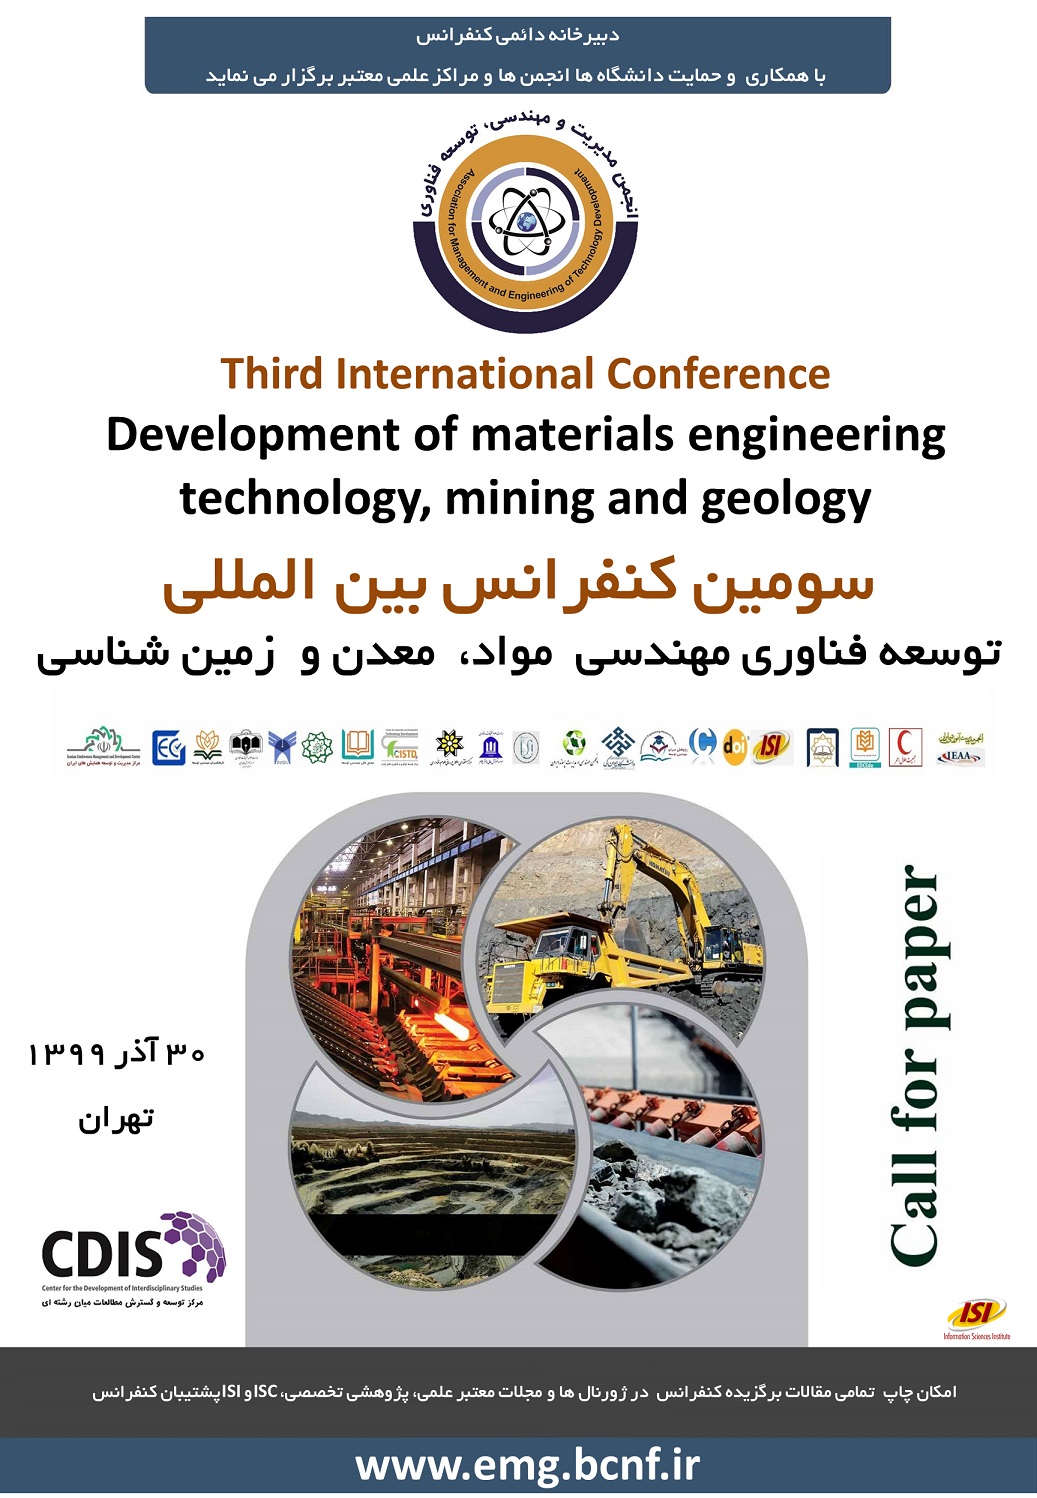 پوستر سومین کنفرانس بین المللی توسعه فناوری مهندسی مواد، معدن و زمین شناسی